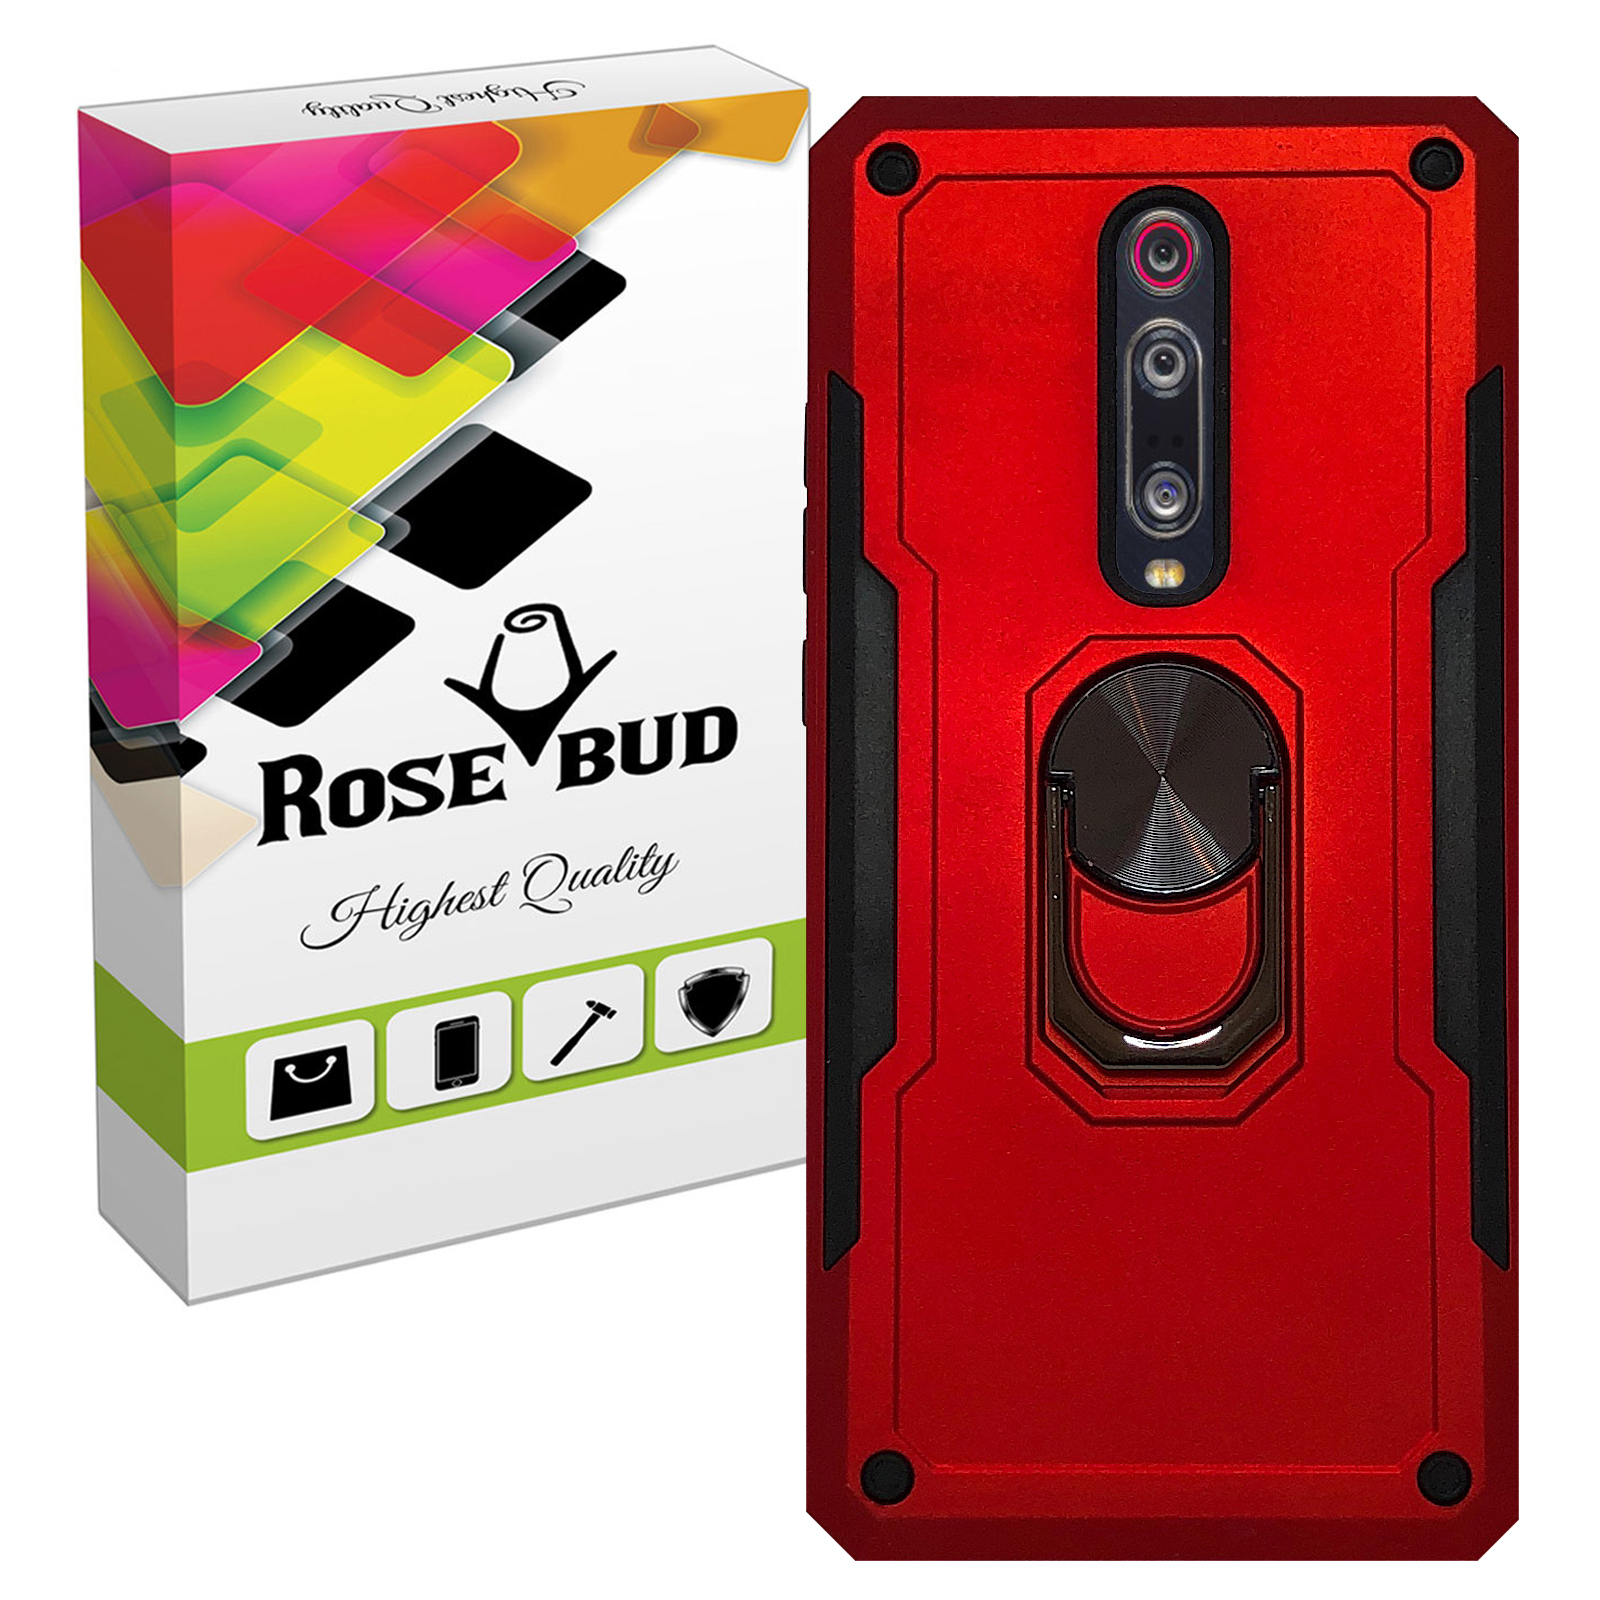 کاور رز باد مدل Rosa008 مناسب برای گوشی موبایل شیایومی Redmi K20 / K20 Pro / Mi 9T / Mi 9T Pro